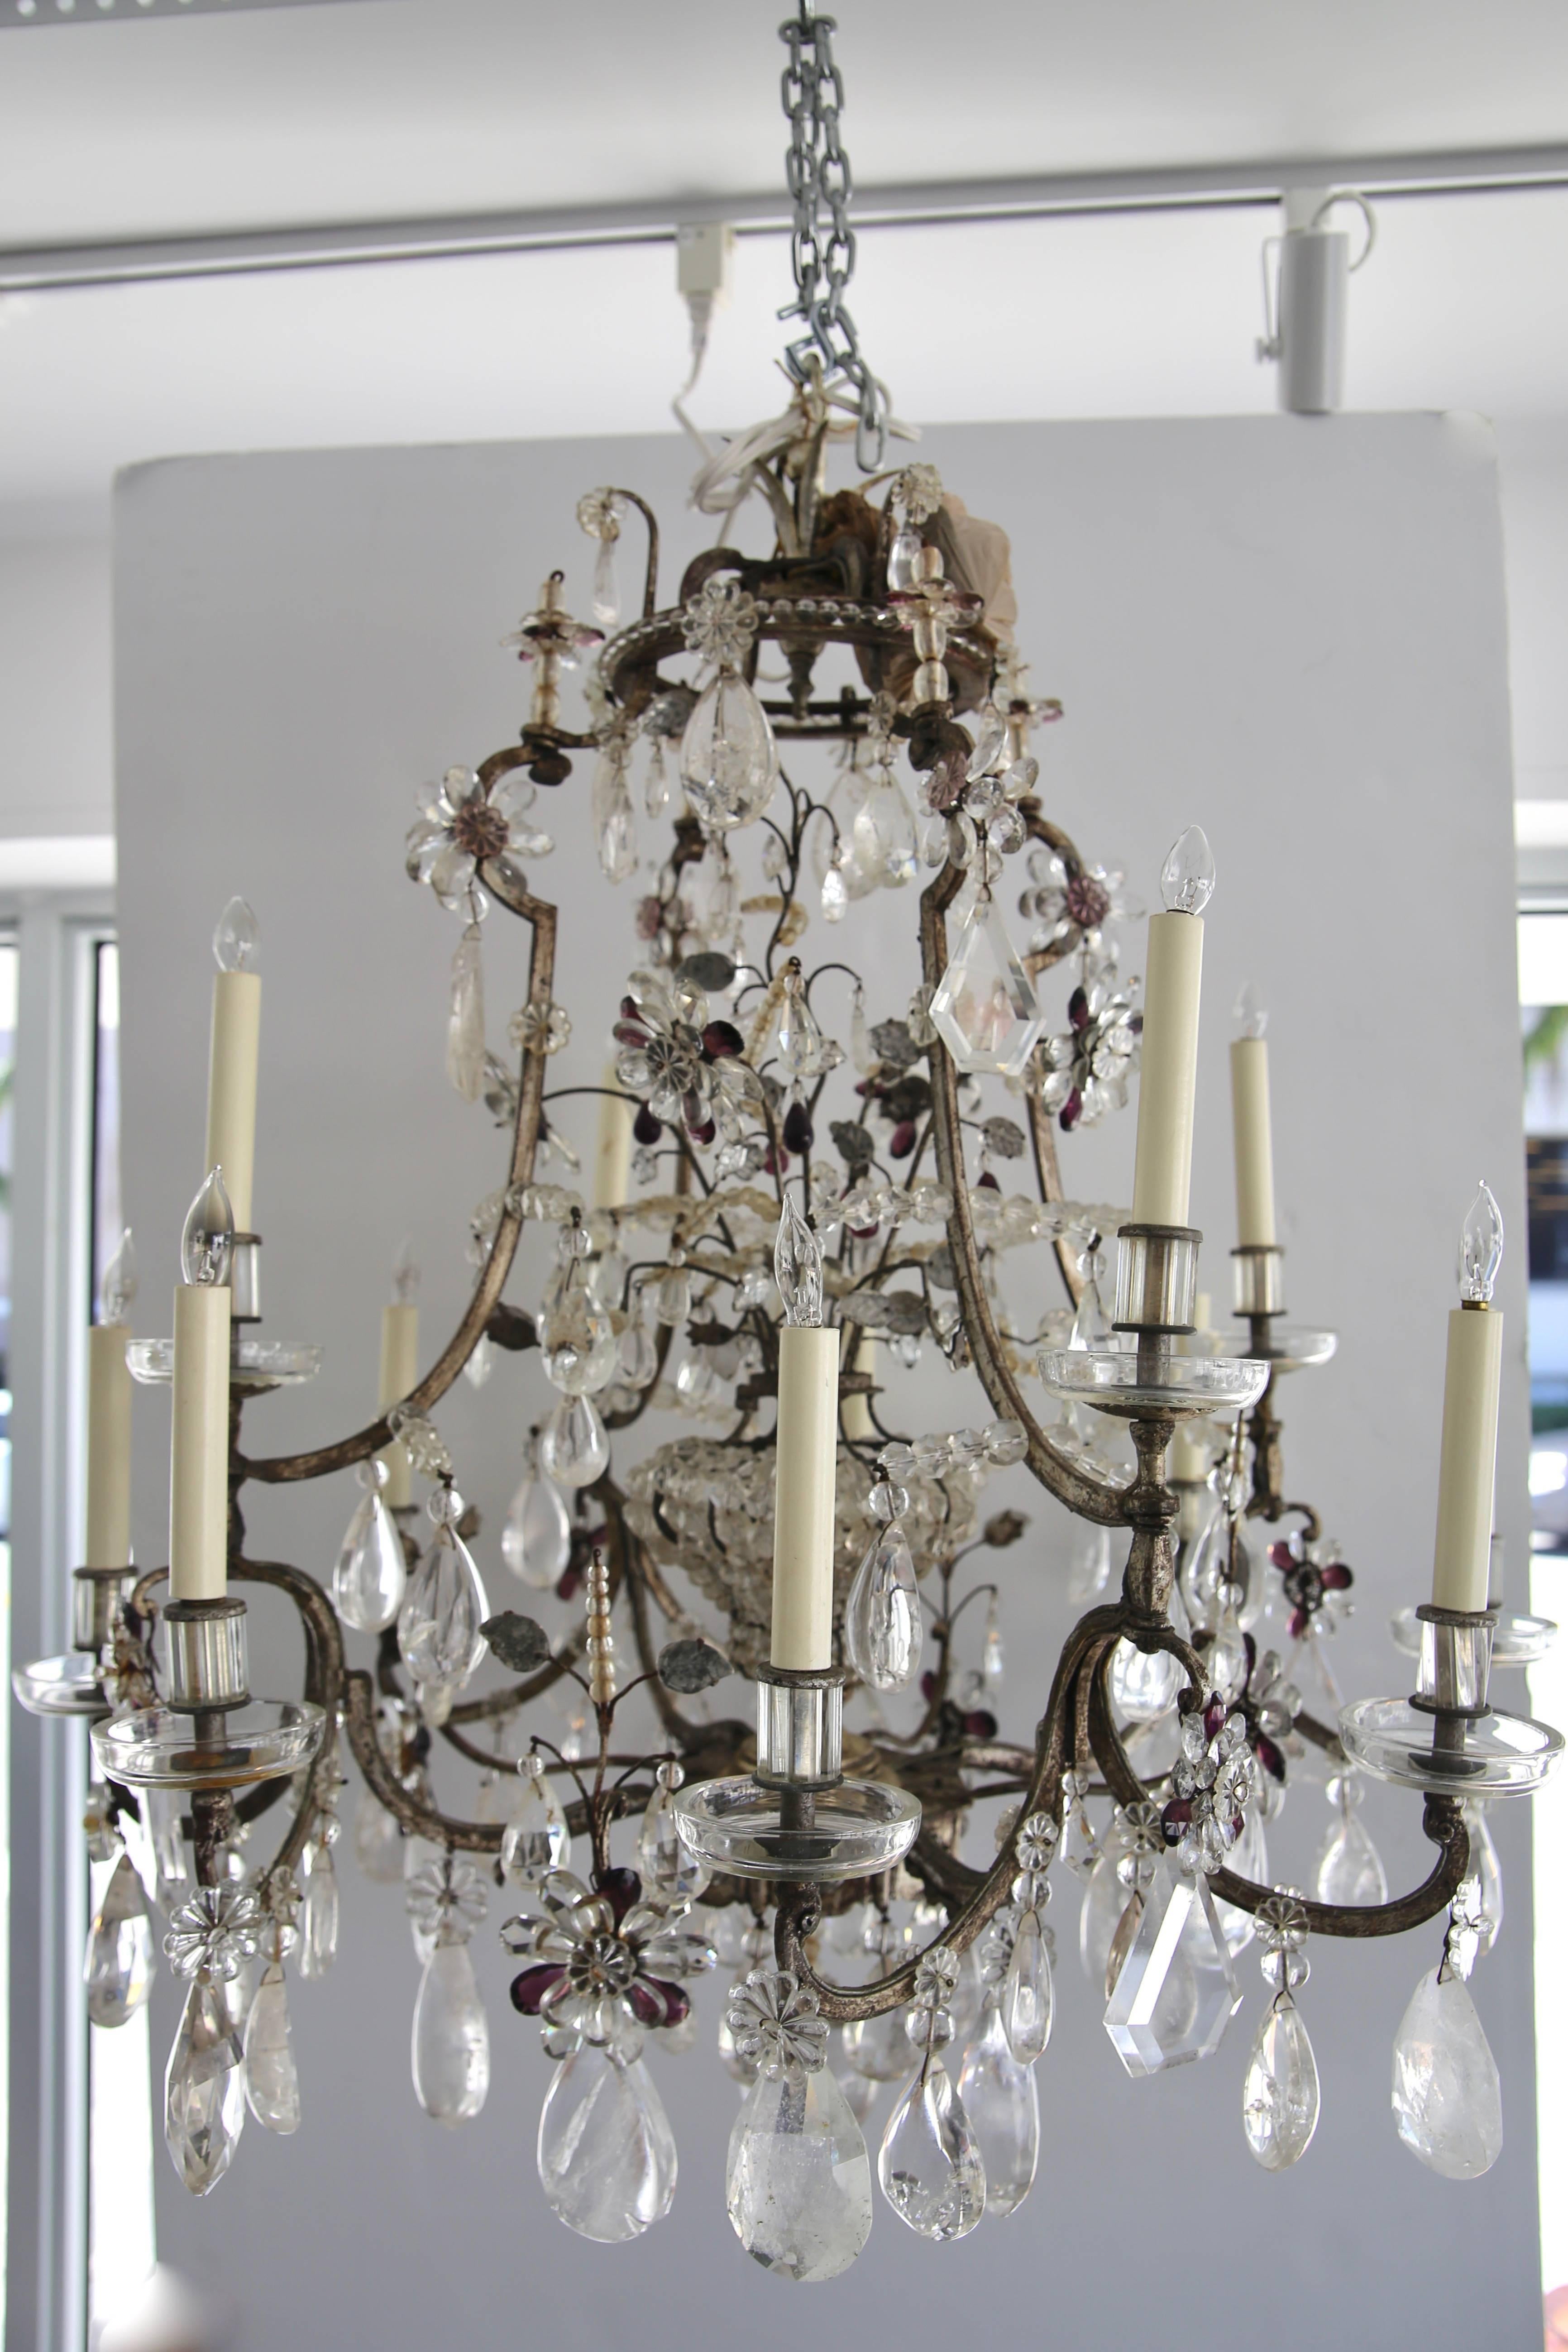 Dieser großflächige, stilvolle und schicke Bergkristall-Kronleuchter wurde von der ikonischen Firma Maison Baguès kreiert und ist im Louis XV-Stil mit seinen 12 Kerzenlichtern und dem inneren Kristallkäfig mit einer einzigen Glühbirne gehalten. Der